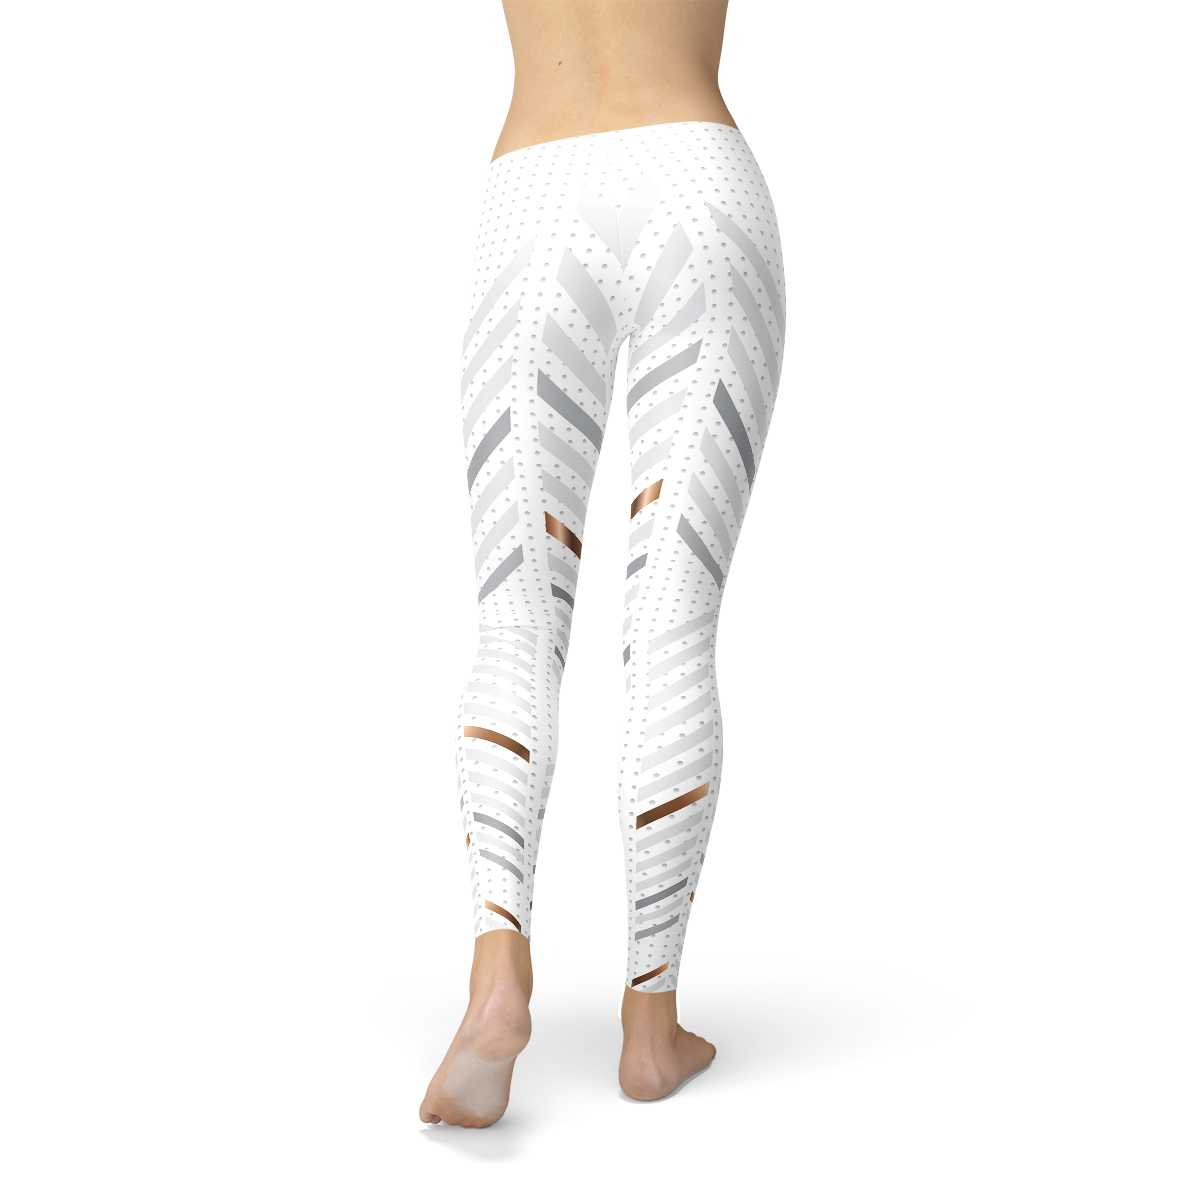 White striped leggings for women